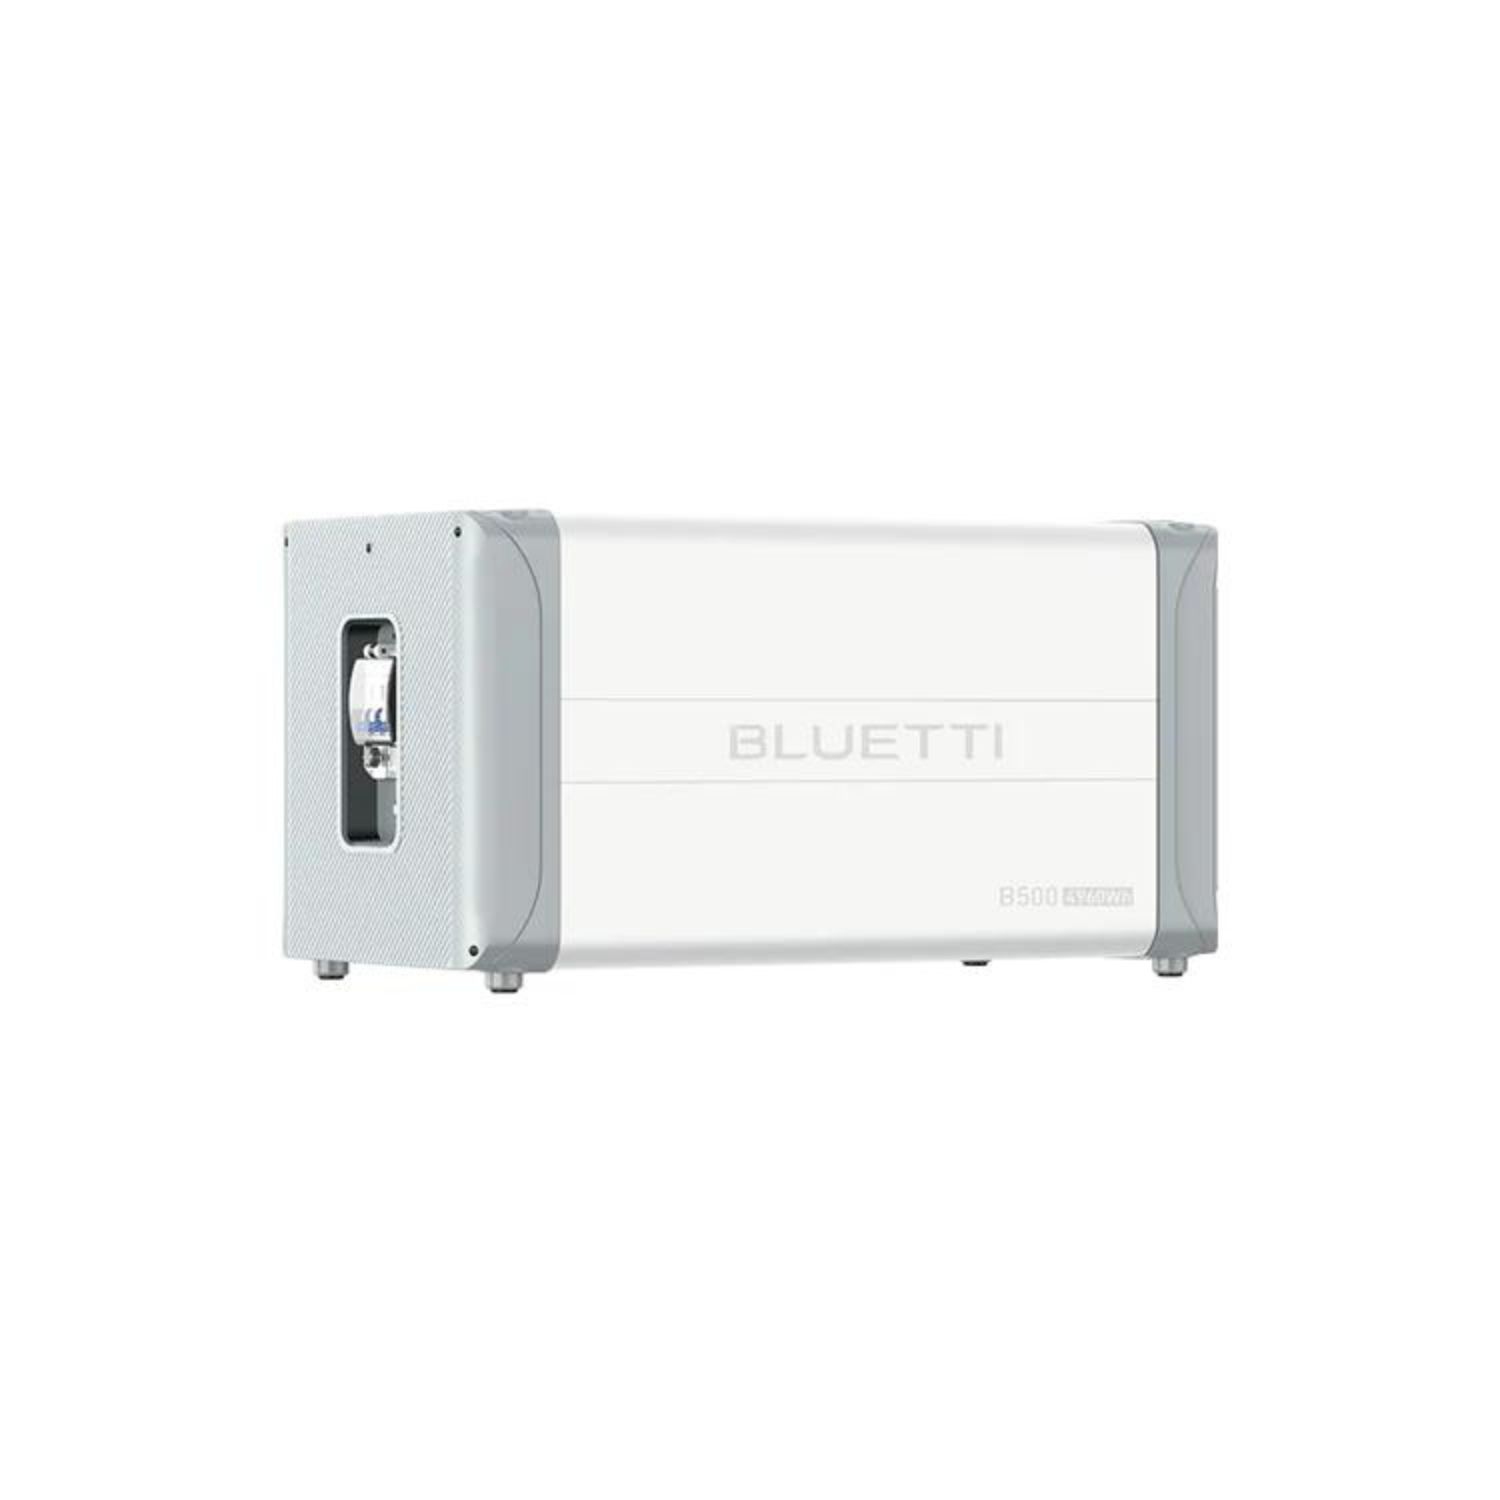 Bluetti B500 4960Wh Erweiterungsmodul